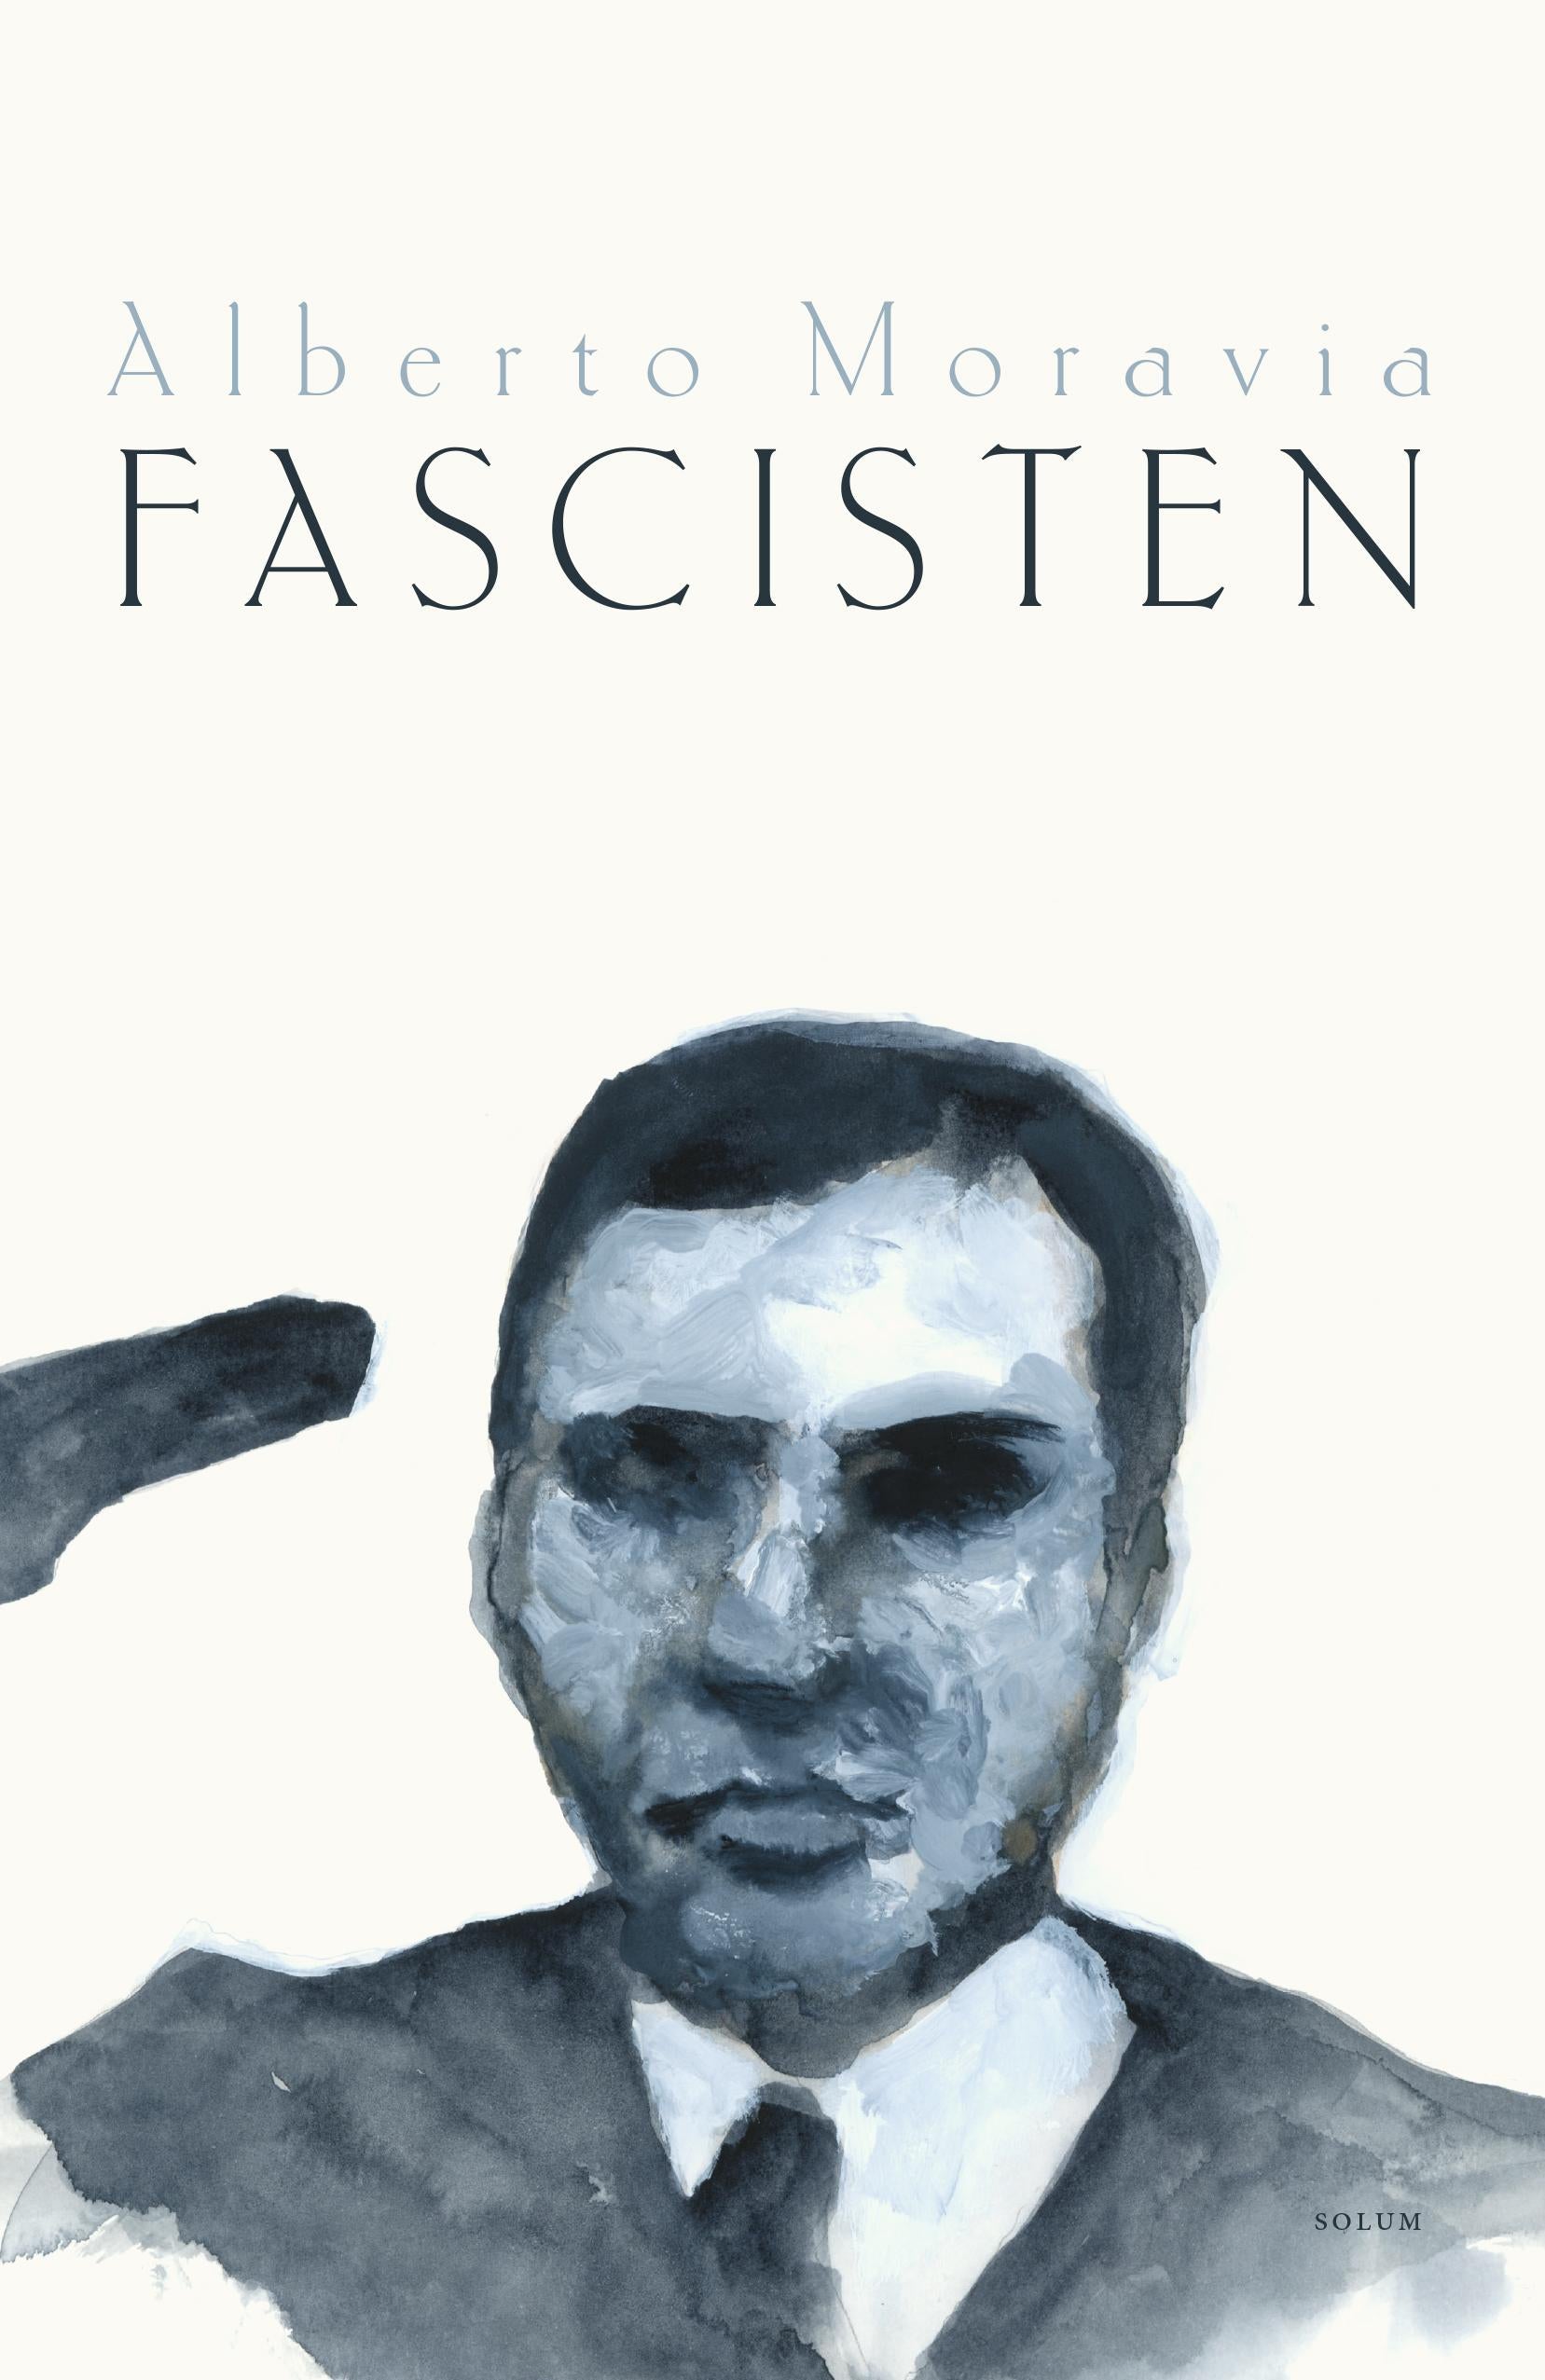 Fascisten